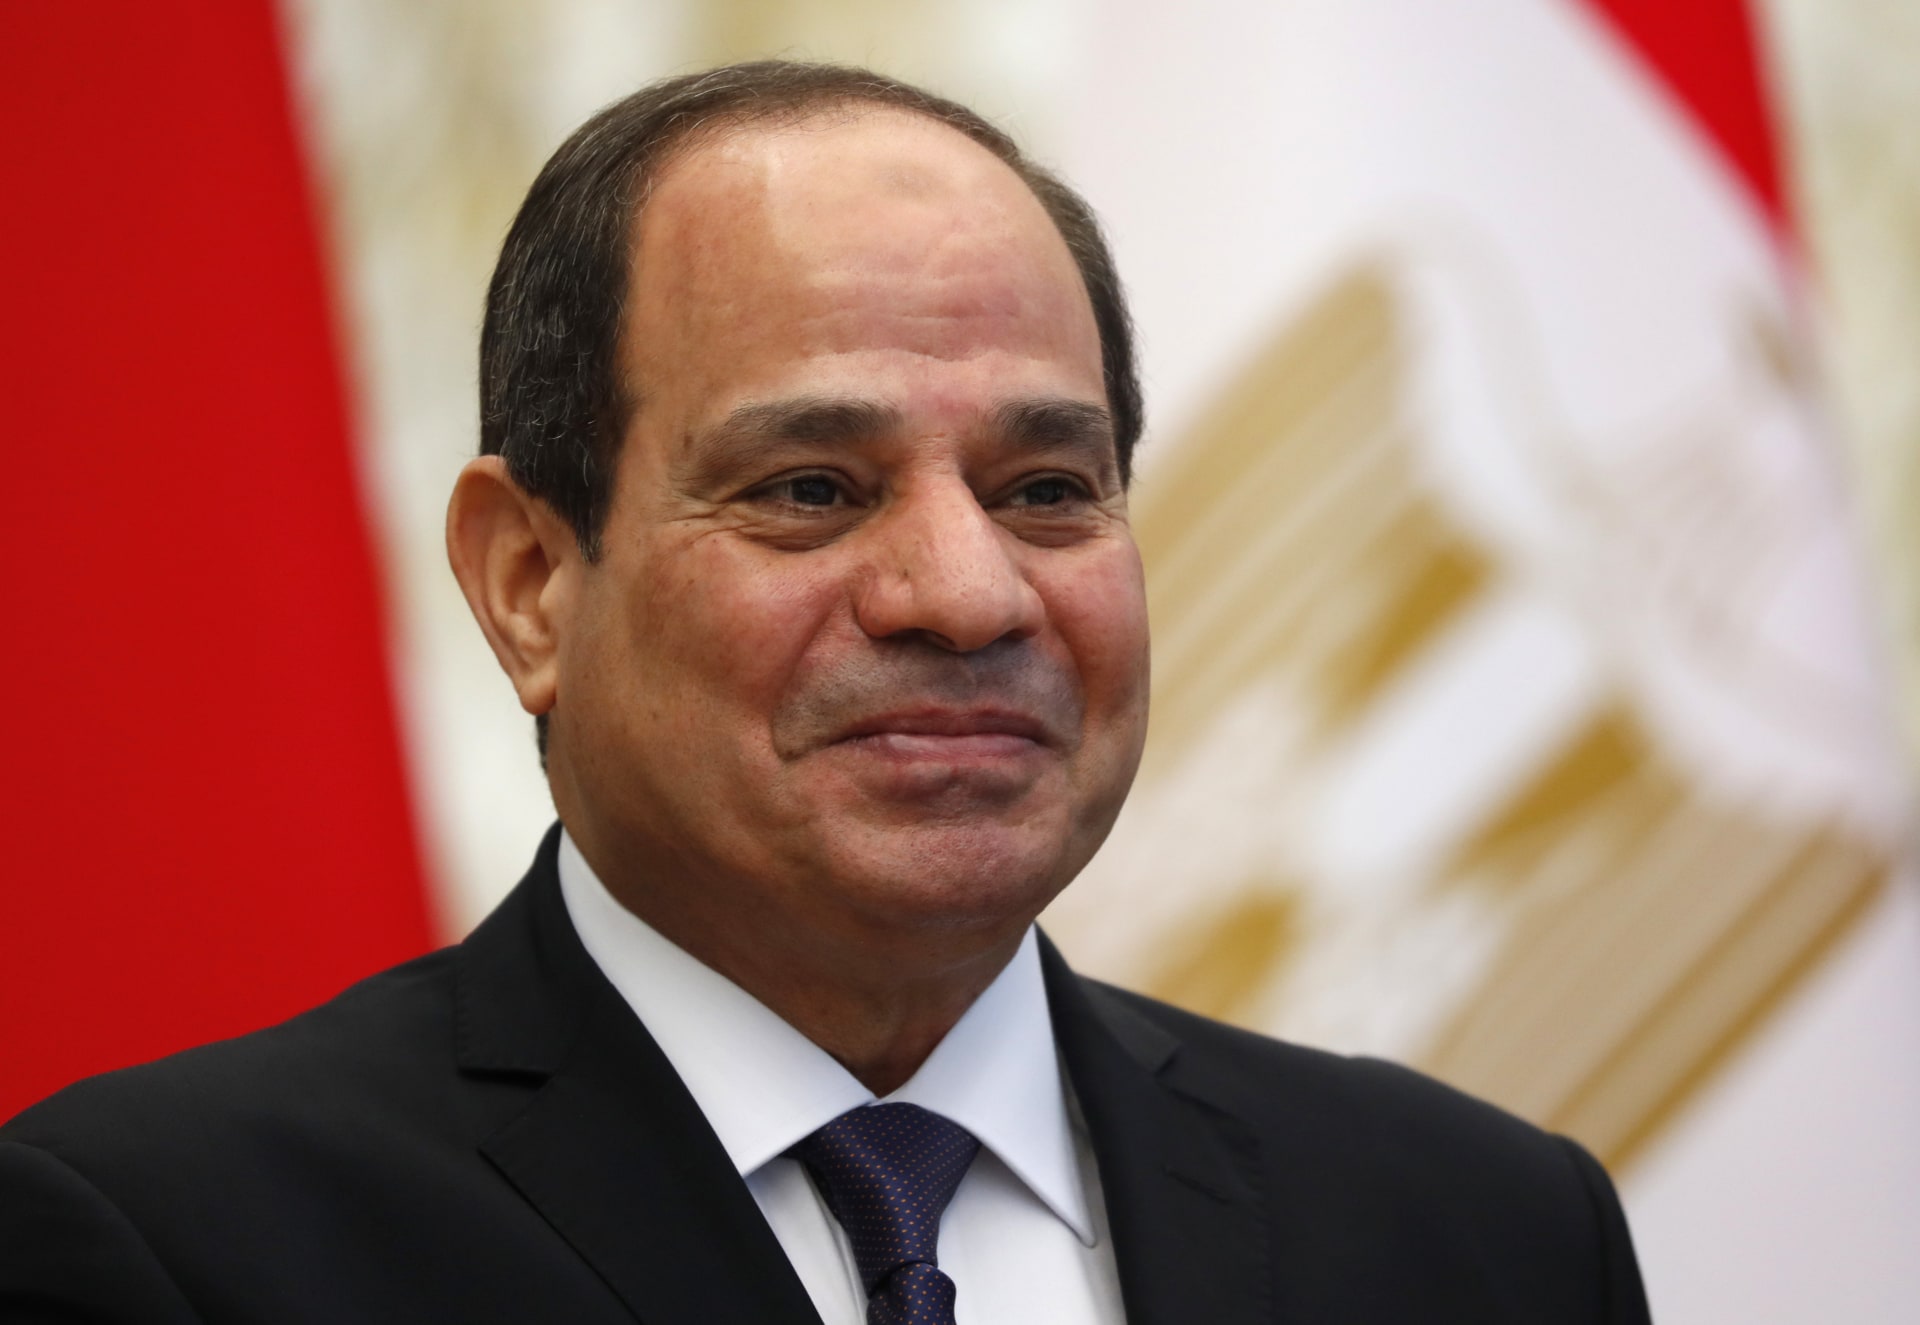 1 مصر .. الرئيس السيسي يستجيب لنداء المصريين .. ويعلن ترشحه لفترة رئاسية جديدة